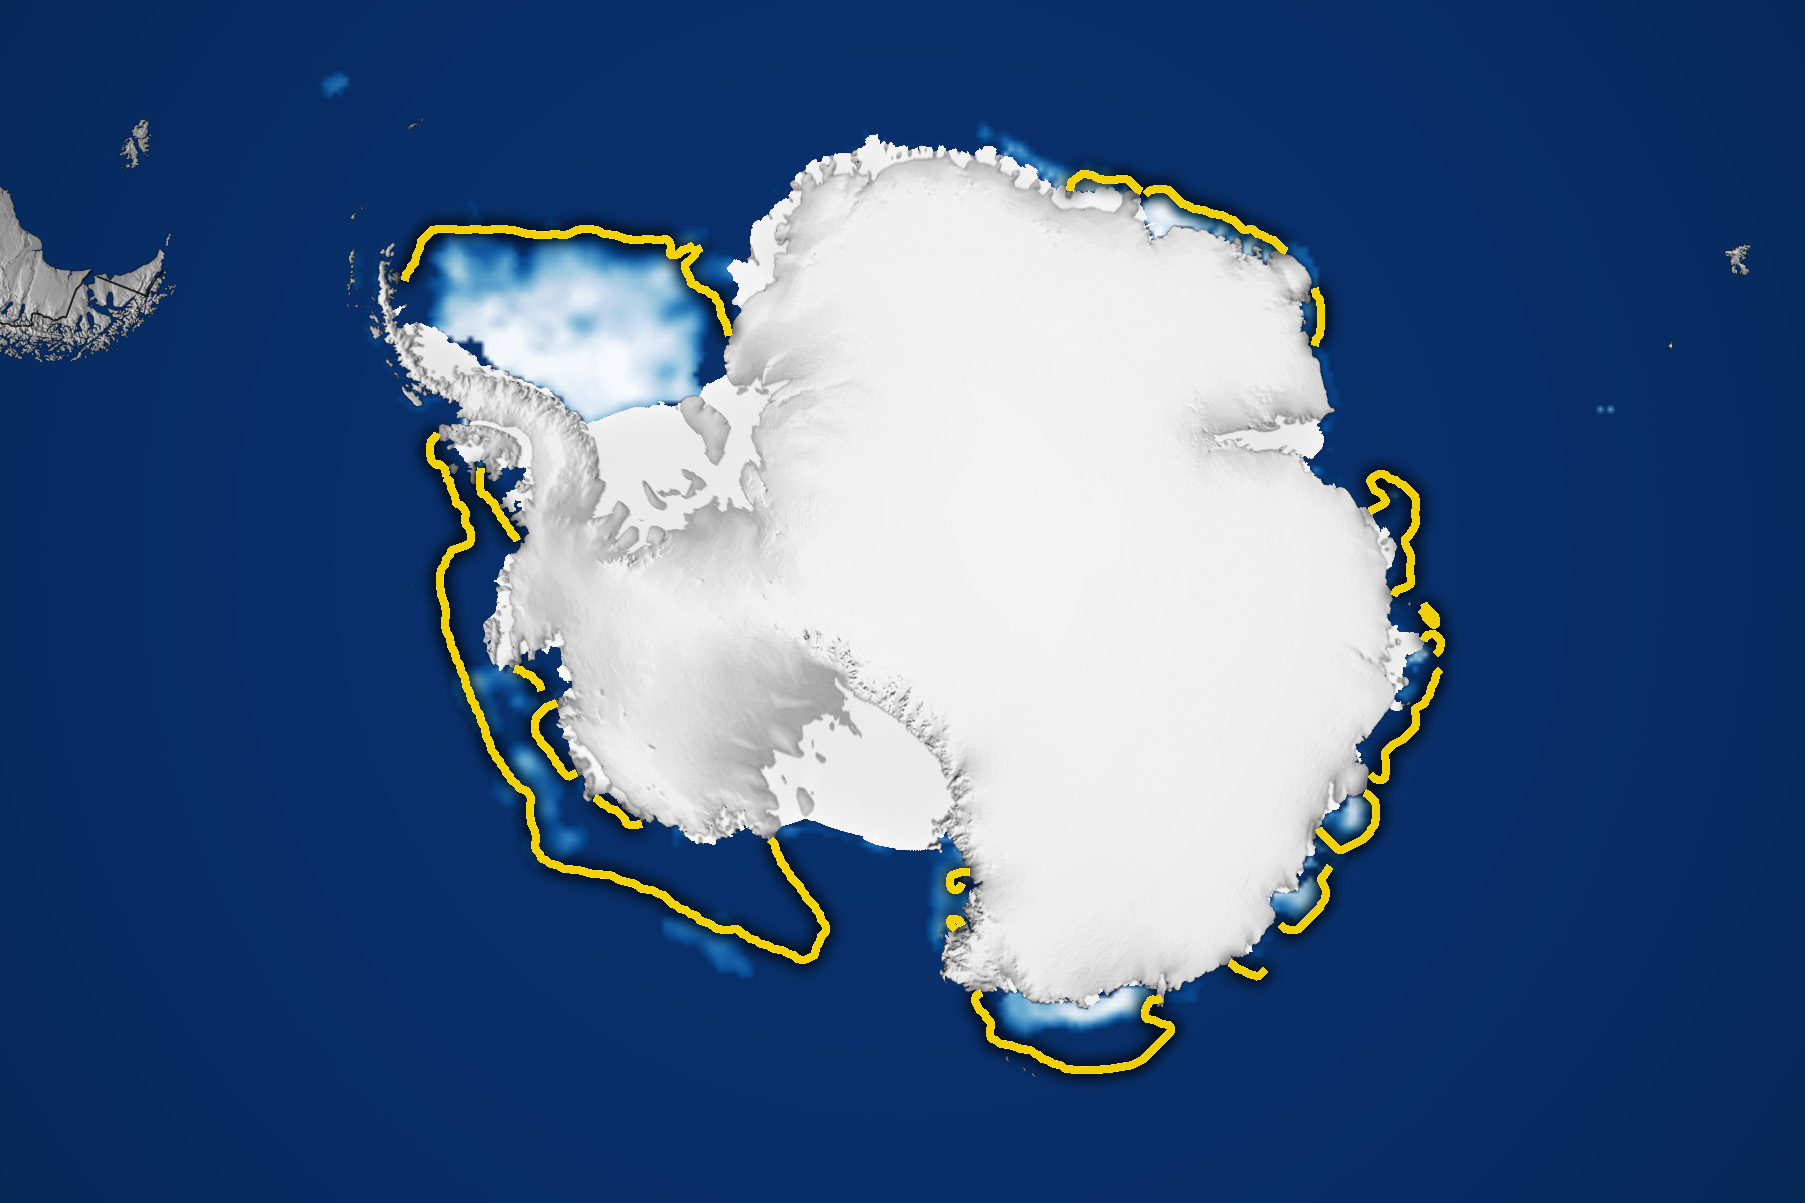 antarctic ocean map